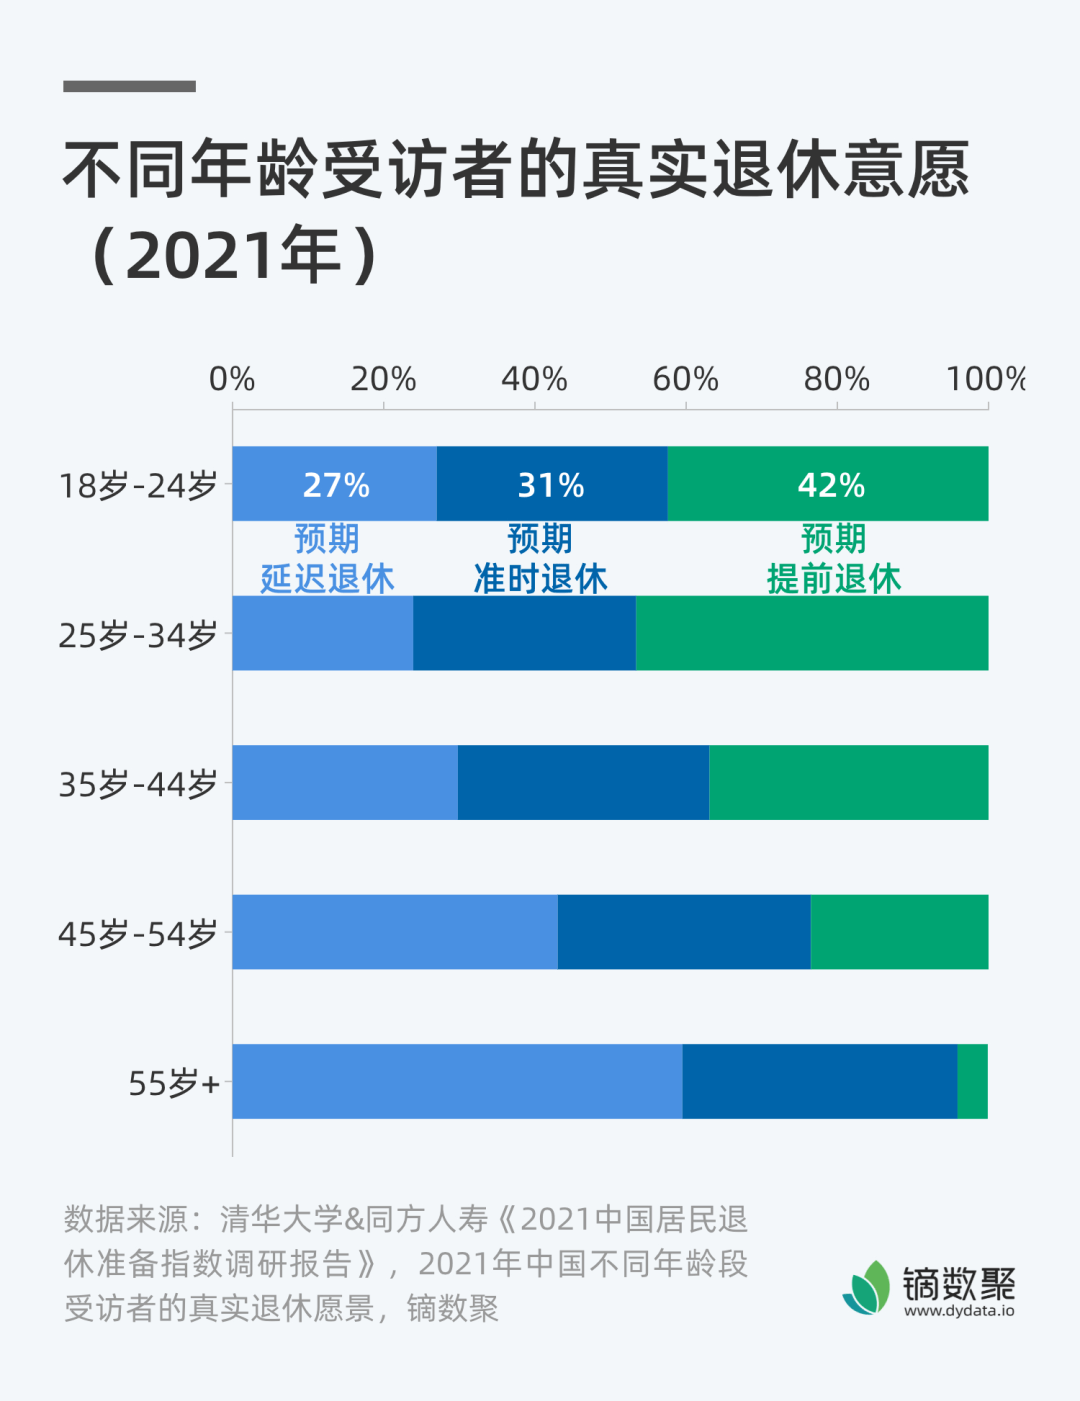 清华大学的调查显示,2021年约80%的人对延迟退休持支持态度